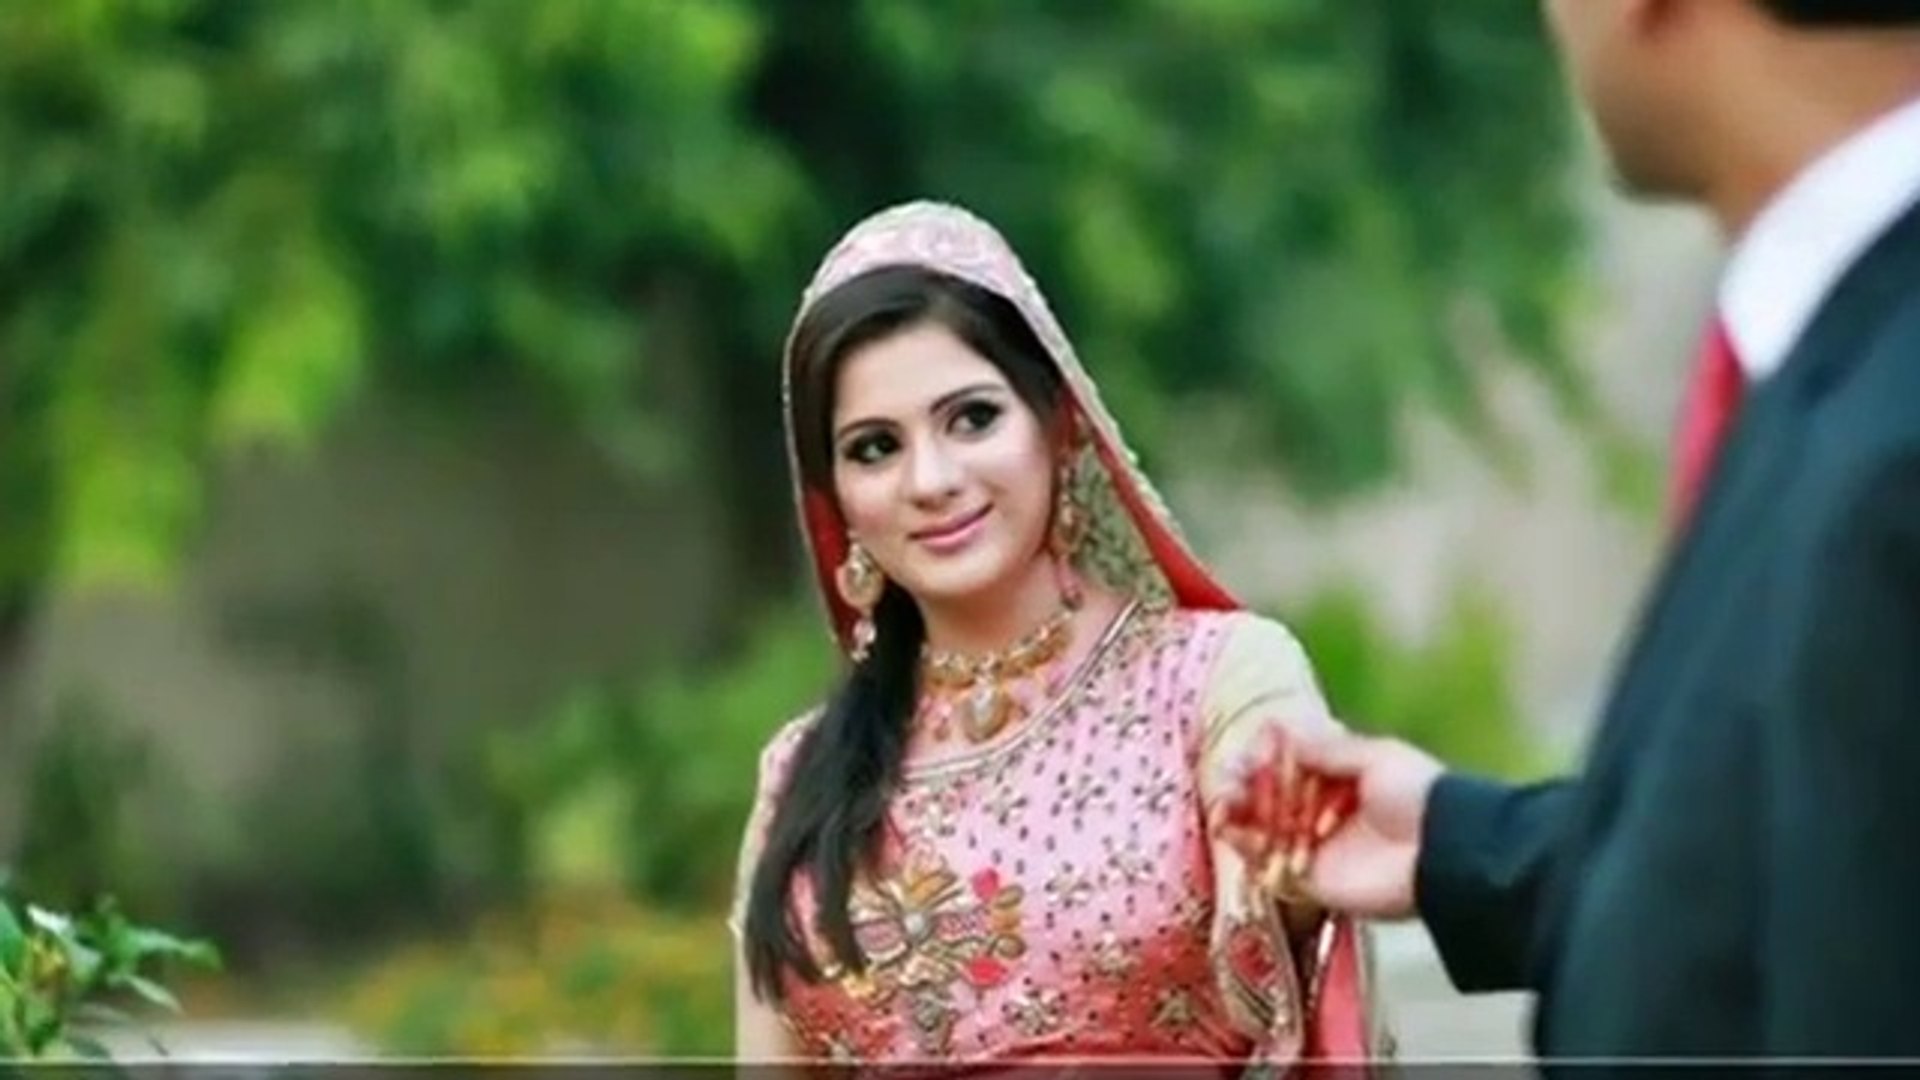 Punjabi Love Song Tere Naal Soniye A Romanticpunjabi - Love Status Songs Tamil , HD Wallpaper & Backgrounds